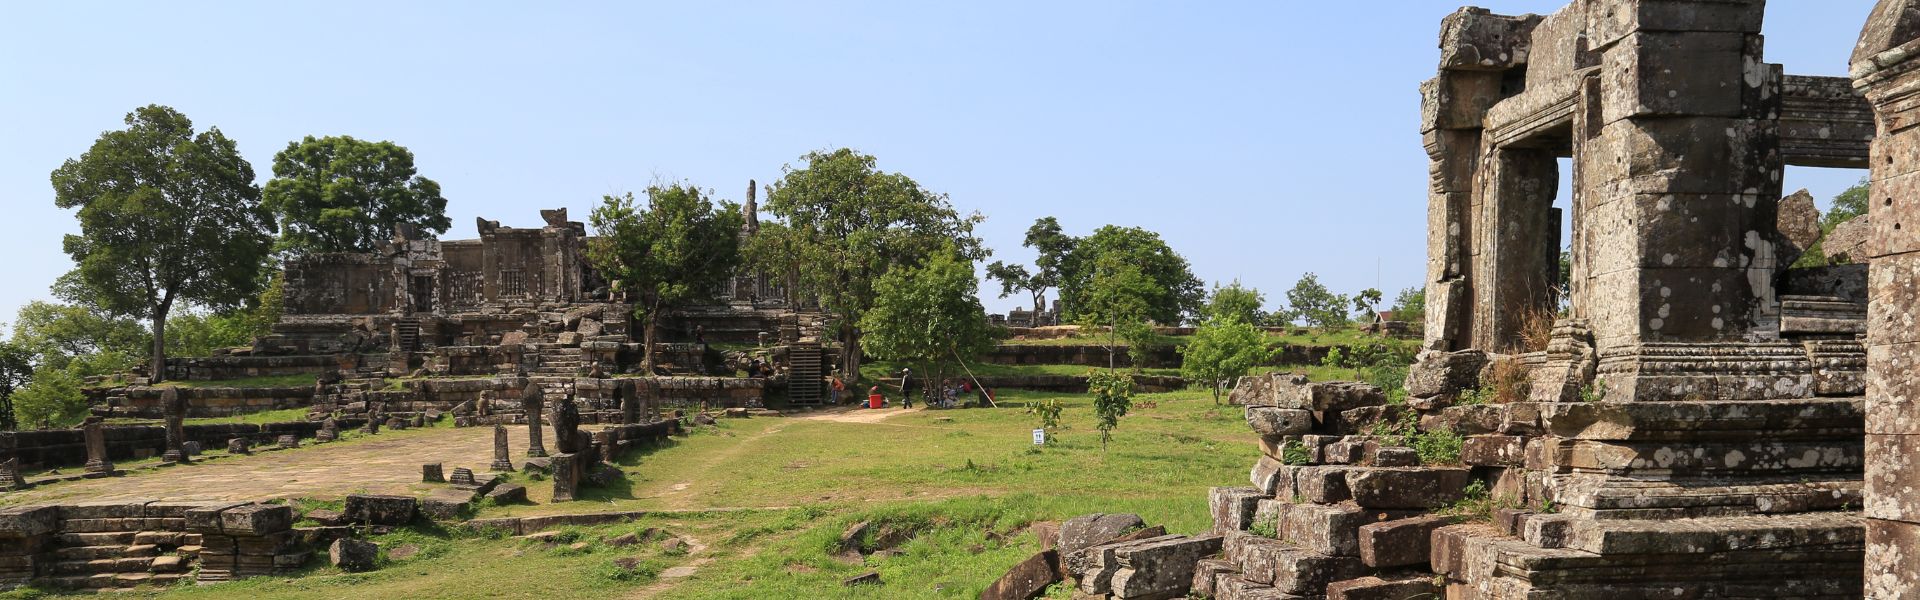 Tempio di Preah Vihear in Cambogia